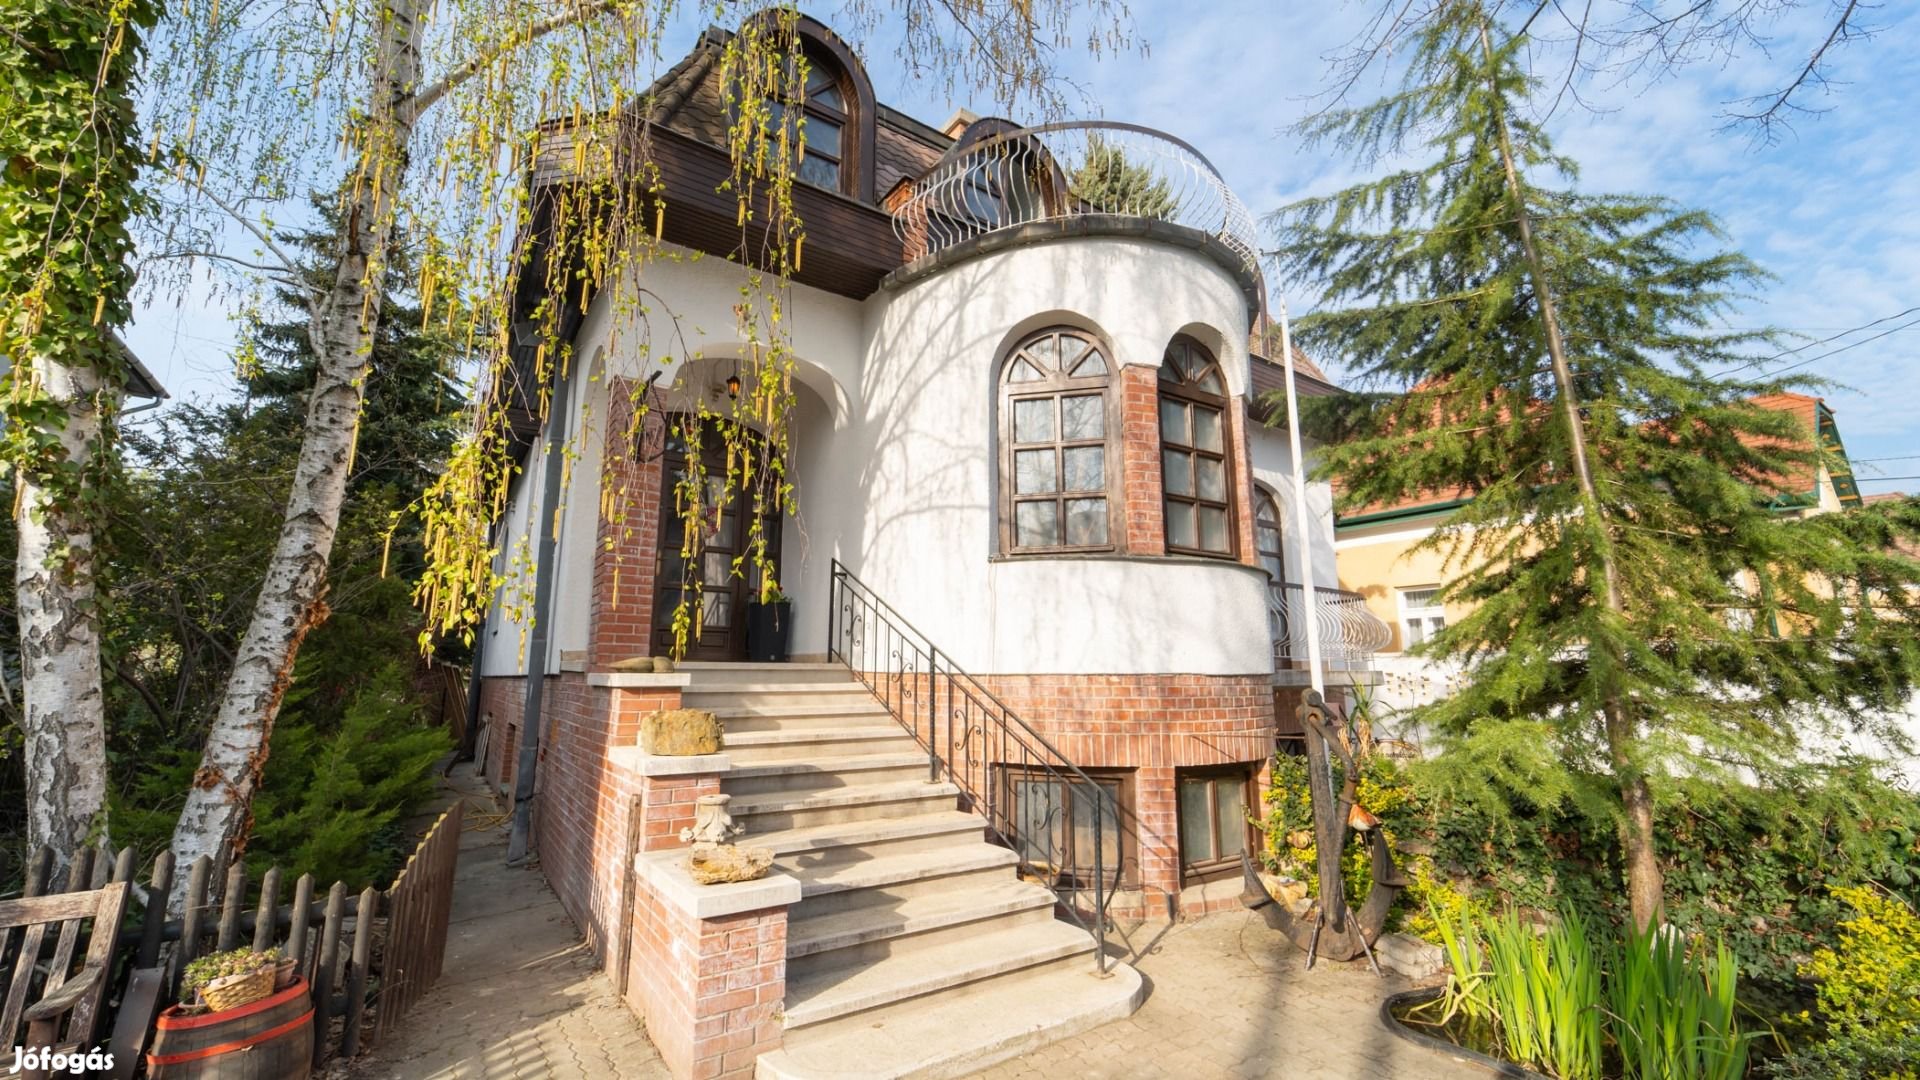 Eladó Ház, Budapest IV. kerület 298.000.000 Ft